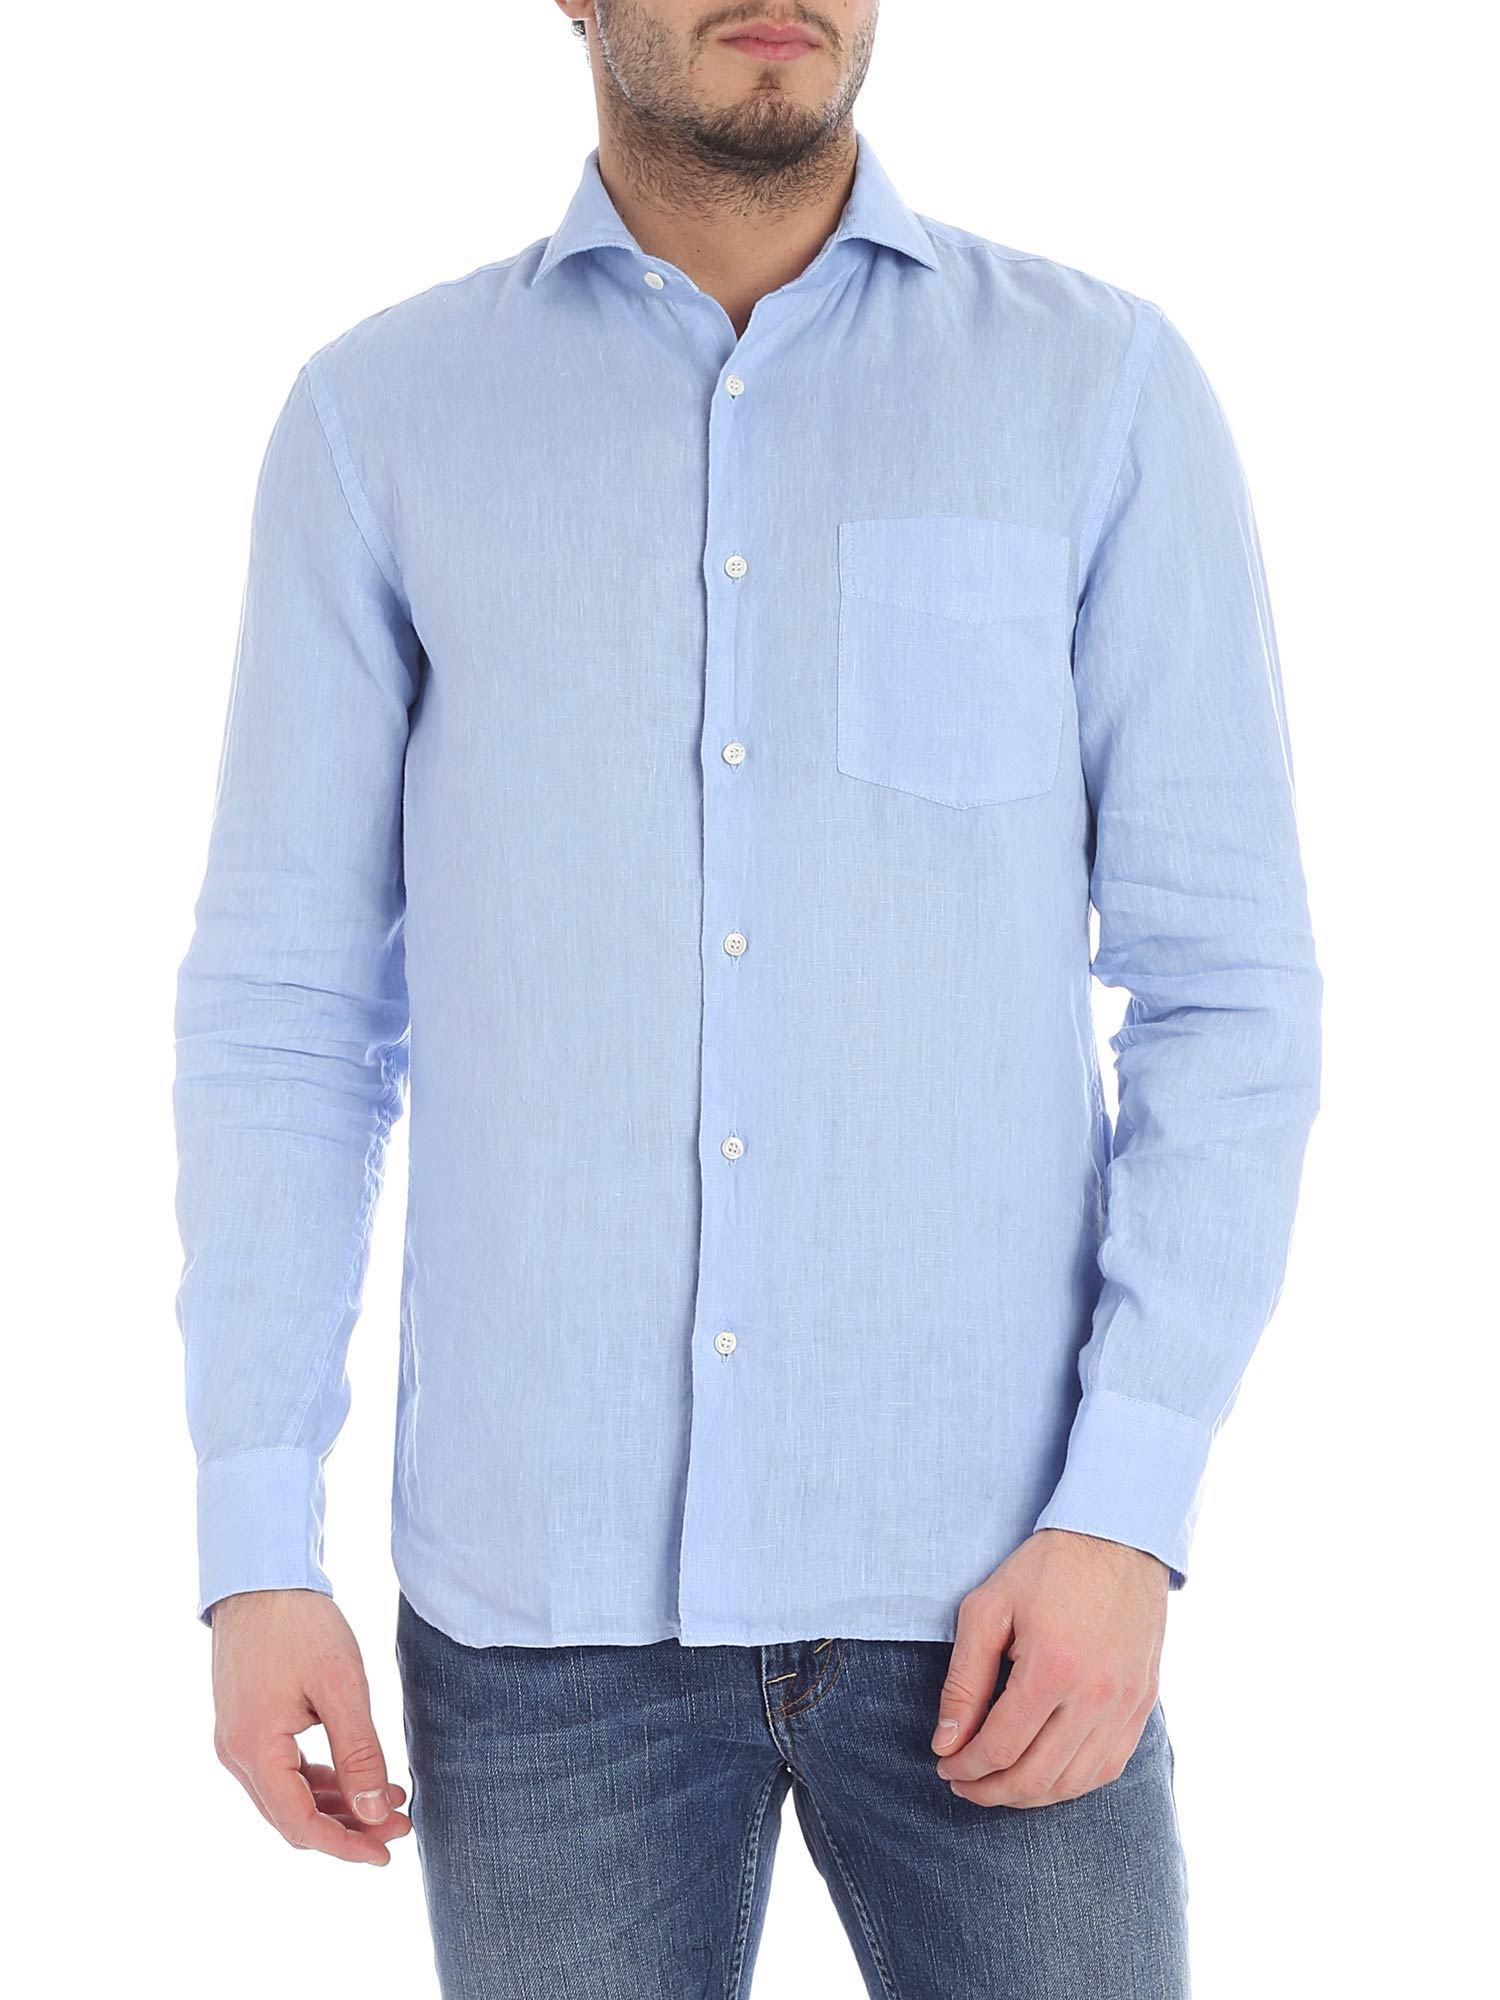 Aspesi Light Blue Linen Shirt in Blue for Men - Save 19% - Lyst